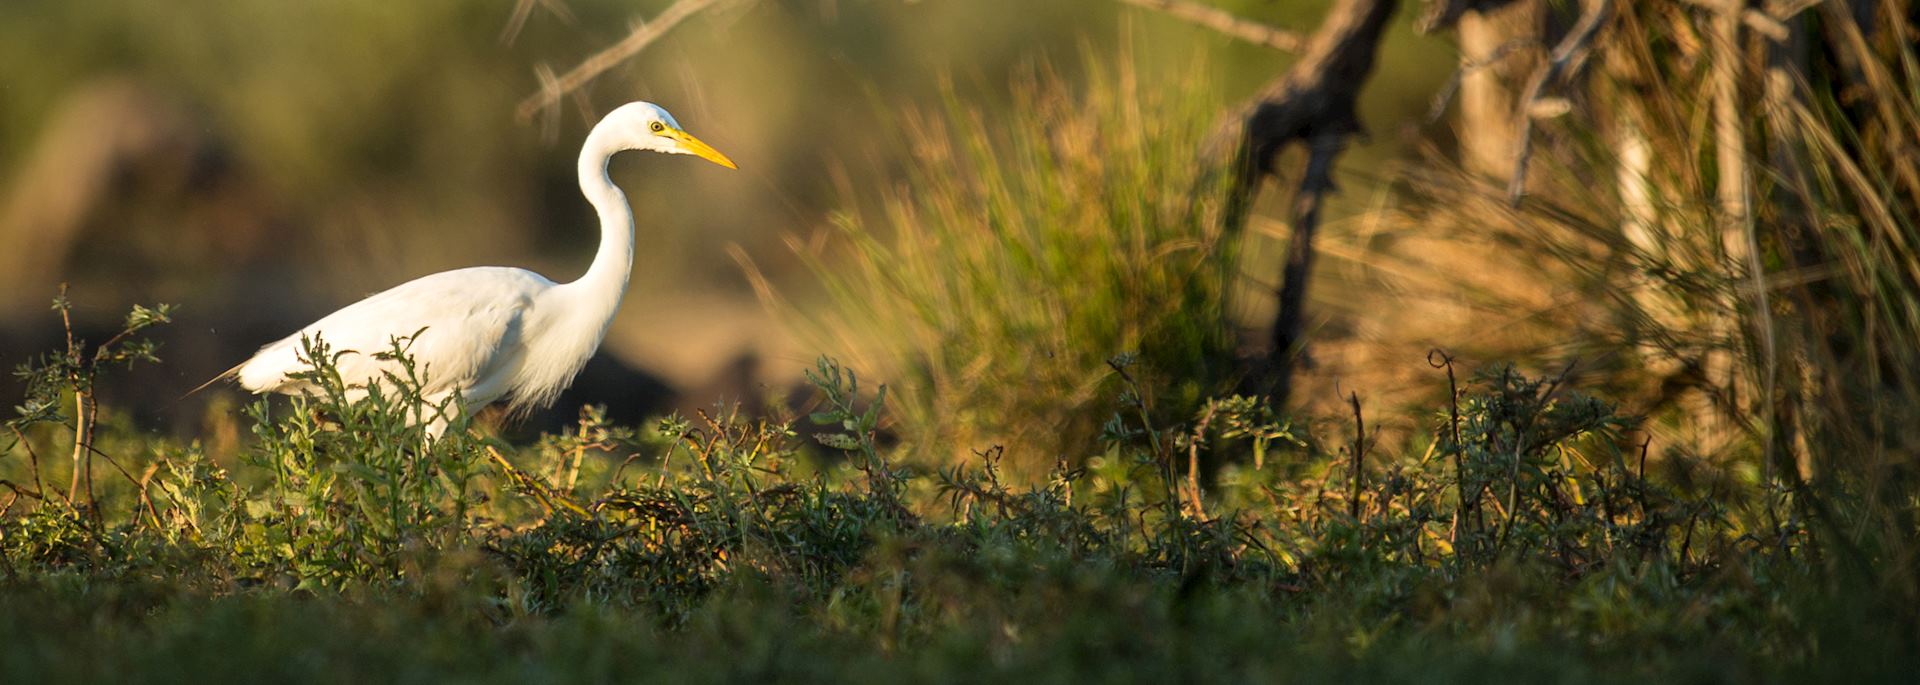 White egret, Katima Mulilo